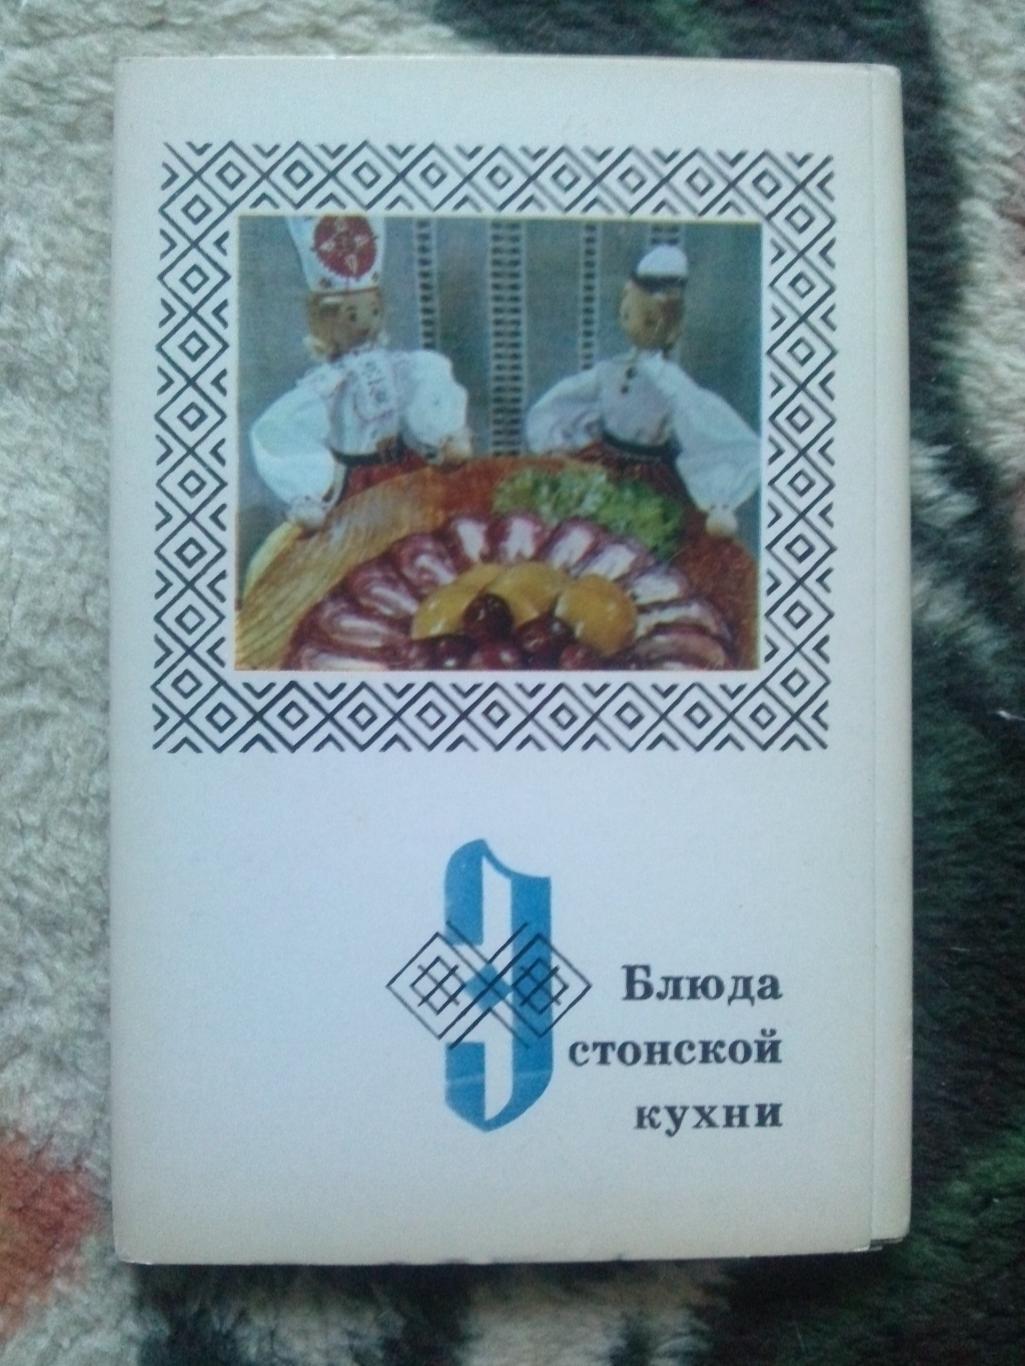 Блюда эстонской кухни 1973 г. полный набор - 15 открыток (Кулинария , рецепты)